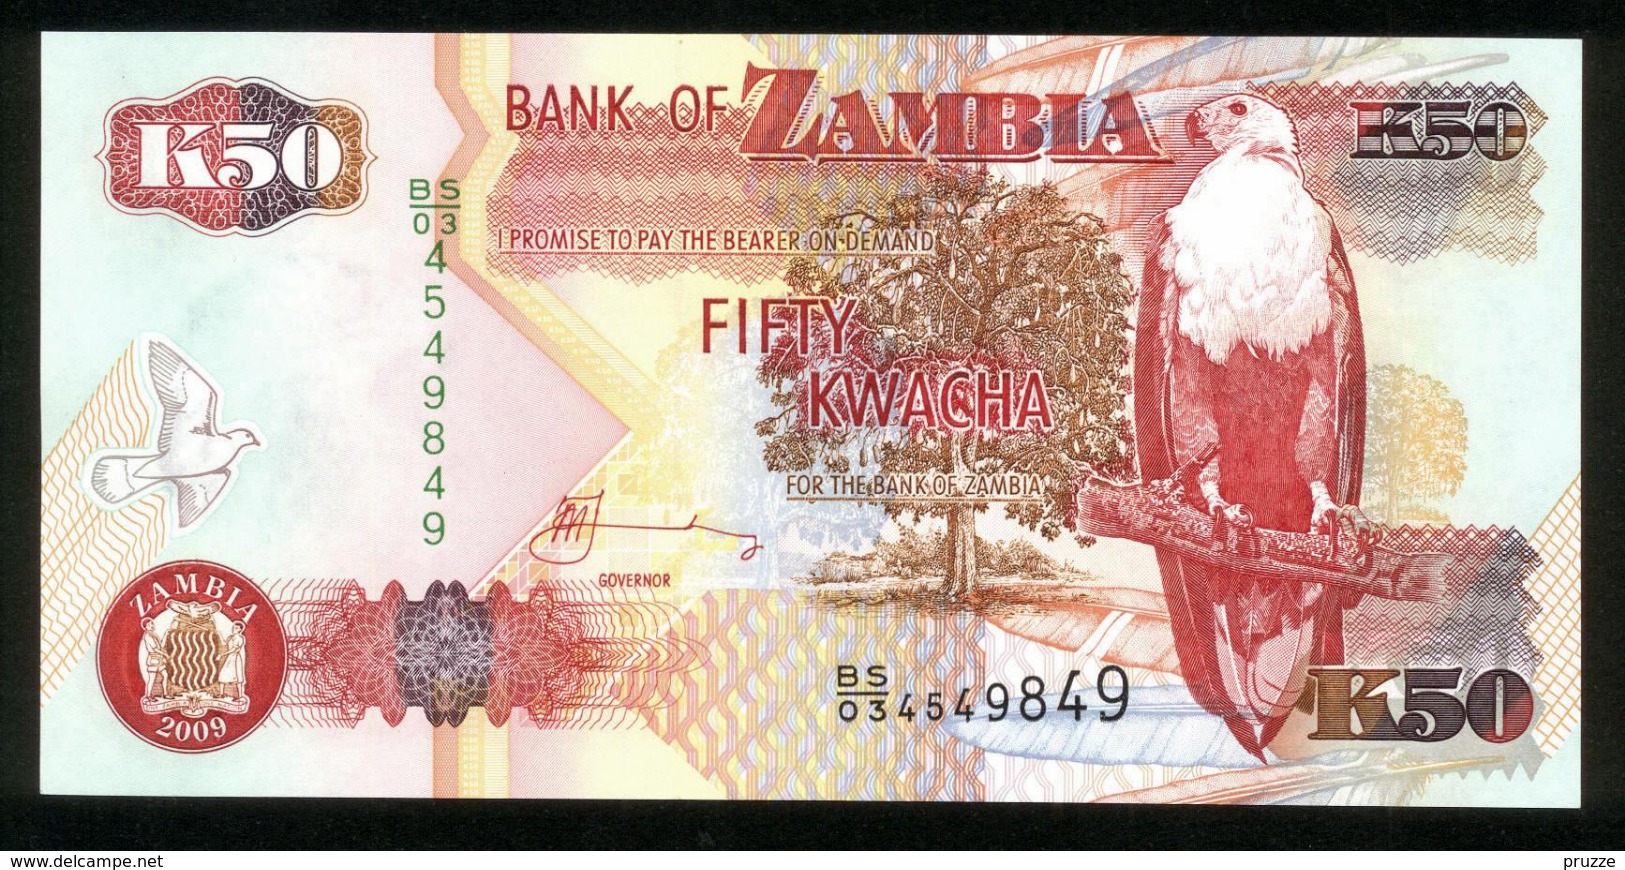 Sambia - Zambia 2009, 50 Kwacha - UNC - BS 03 4549849 - Sambia